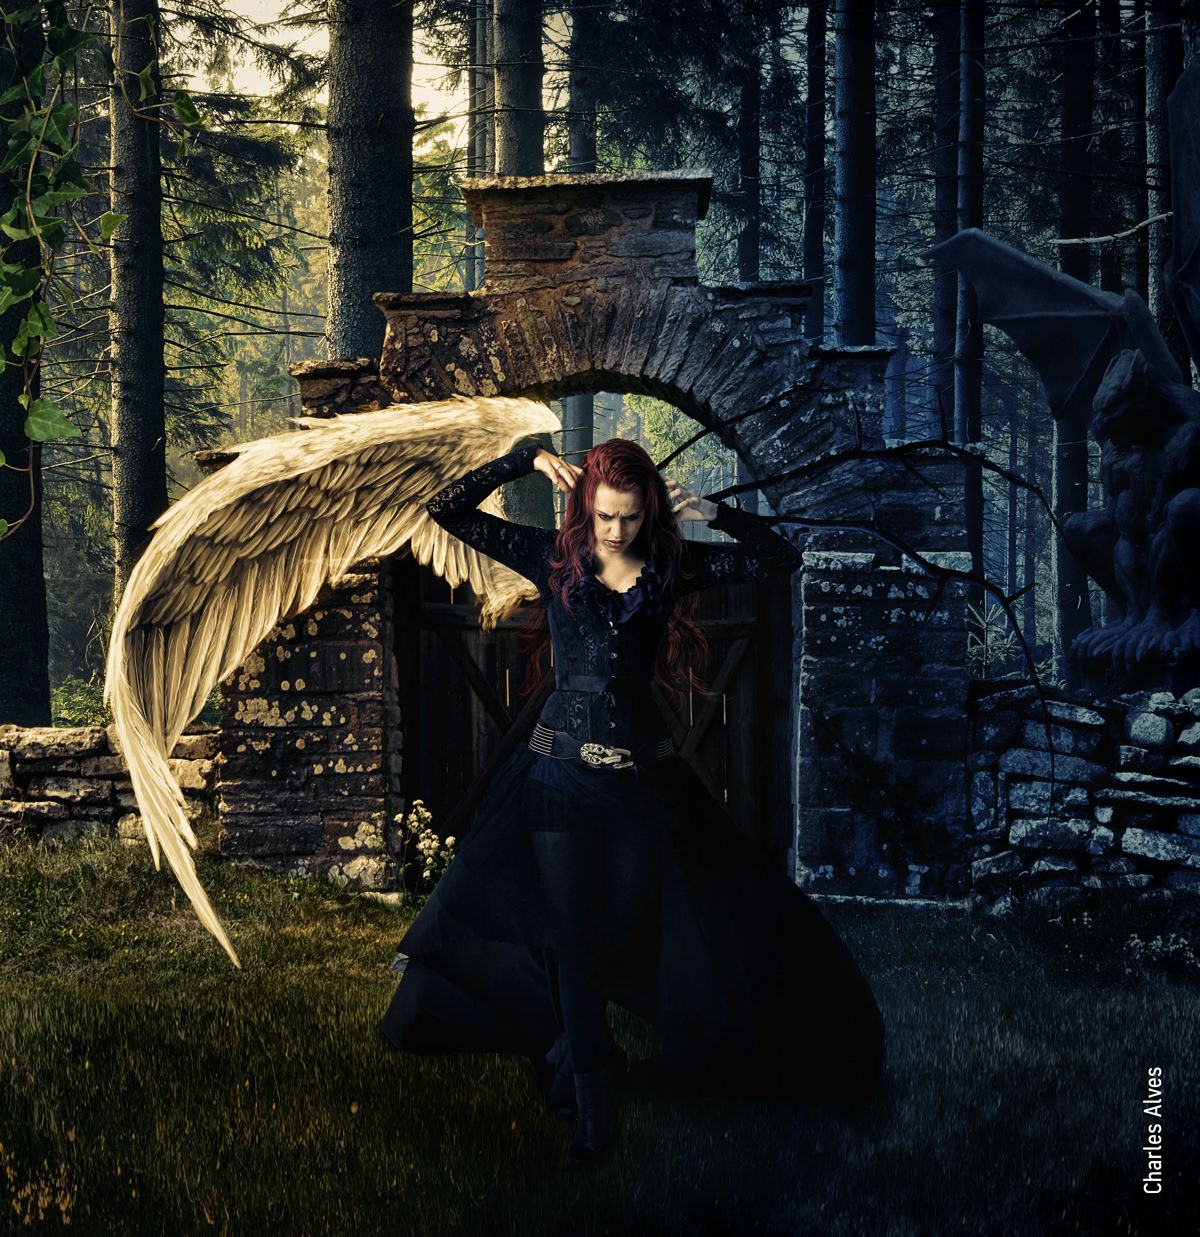 photoshop creative dark angel retpuch challenge manipulated